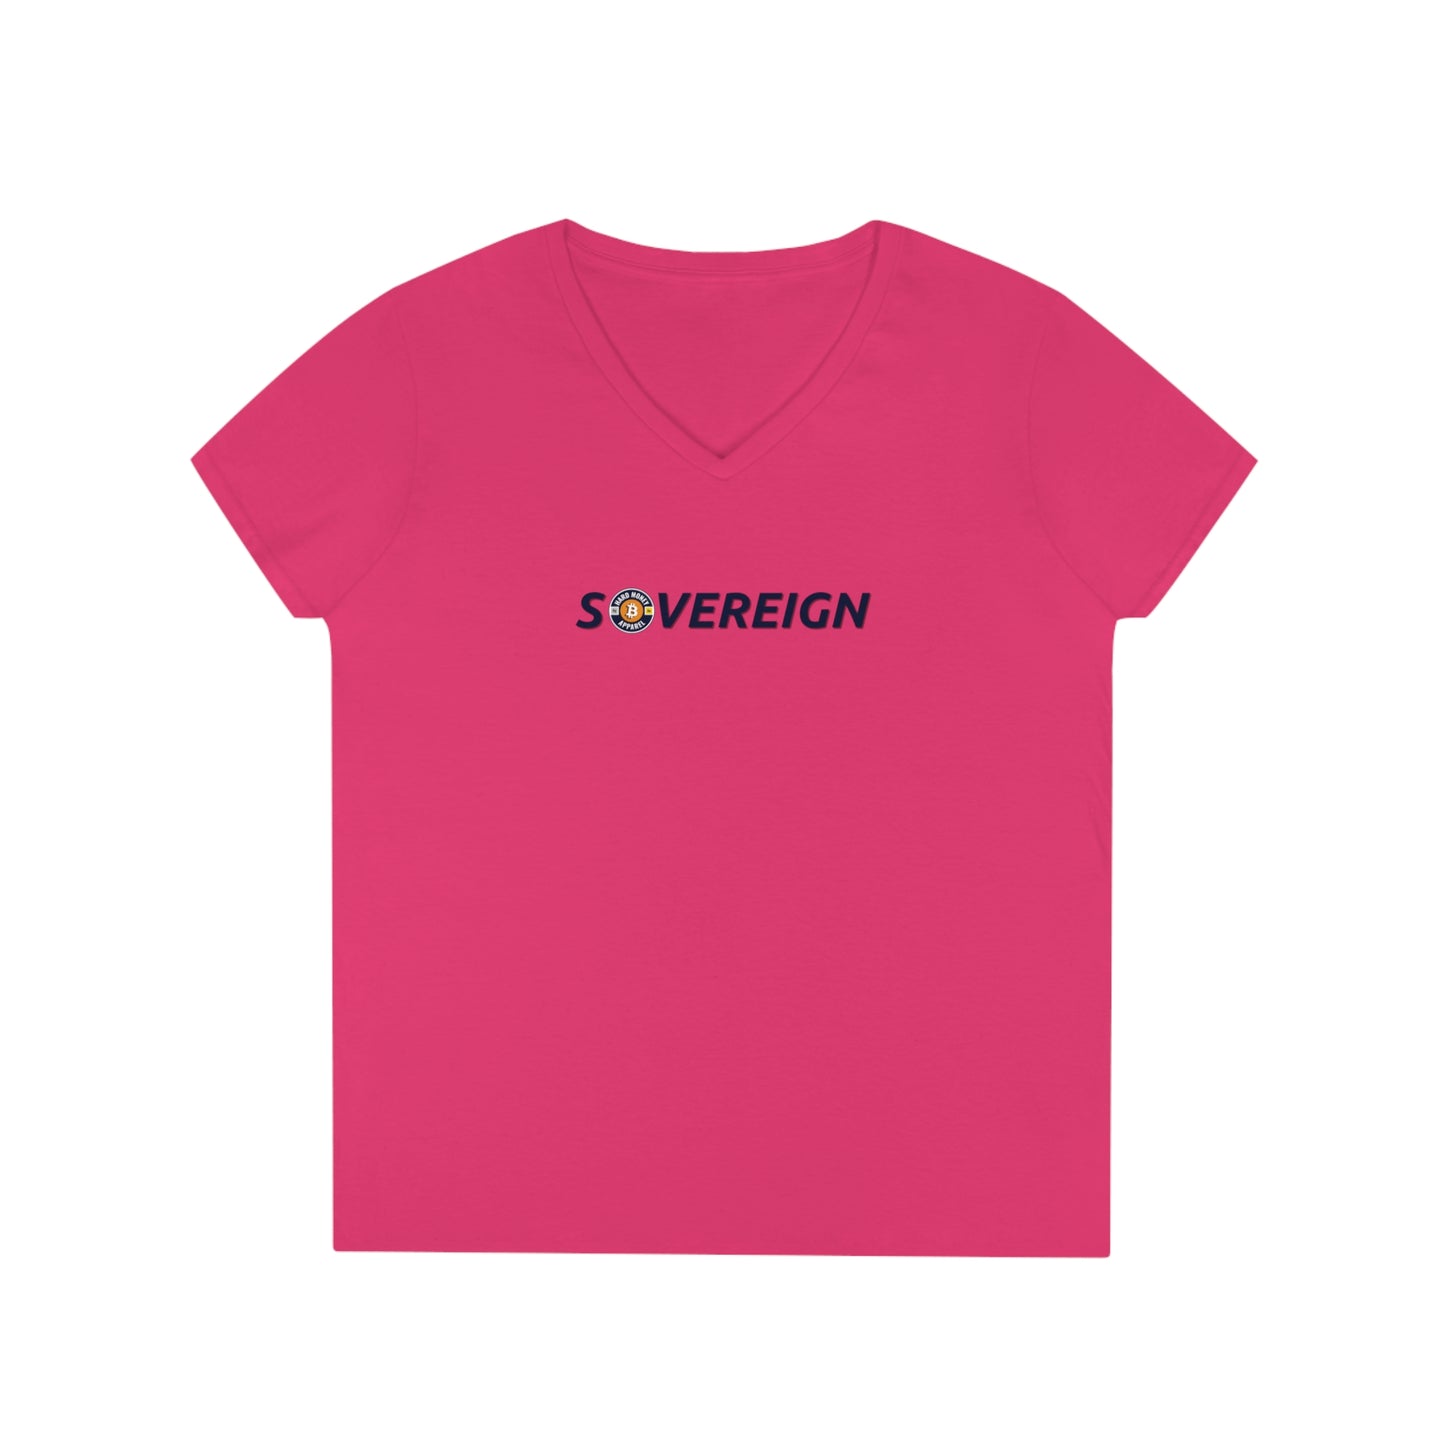 Sovereign - Ladies' V-Neck T-Shirt